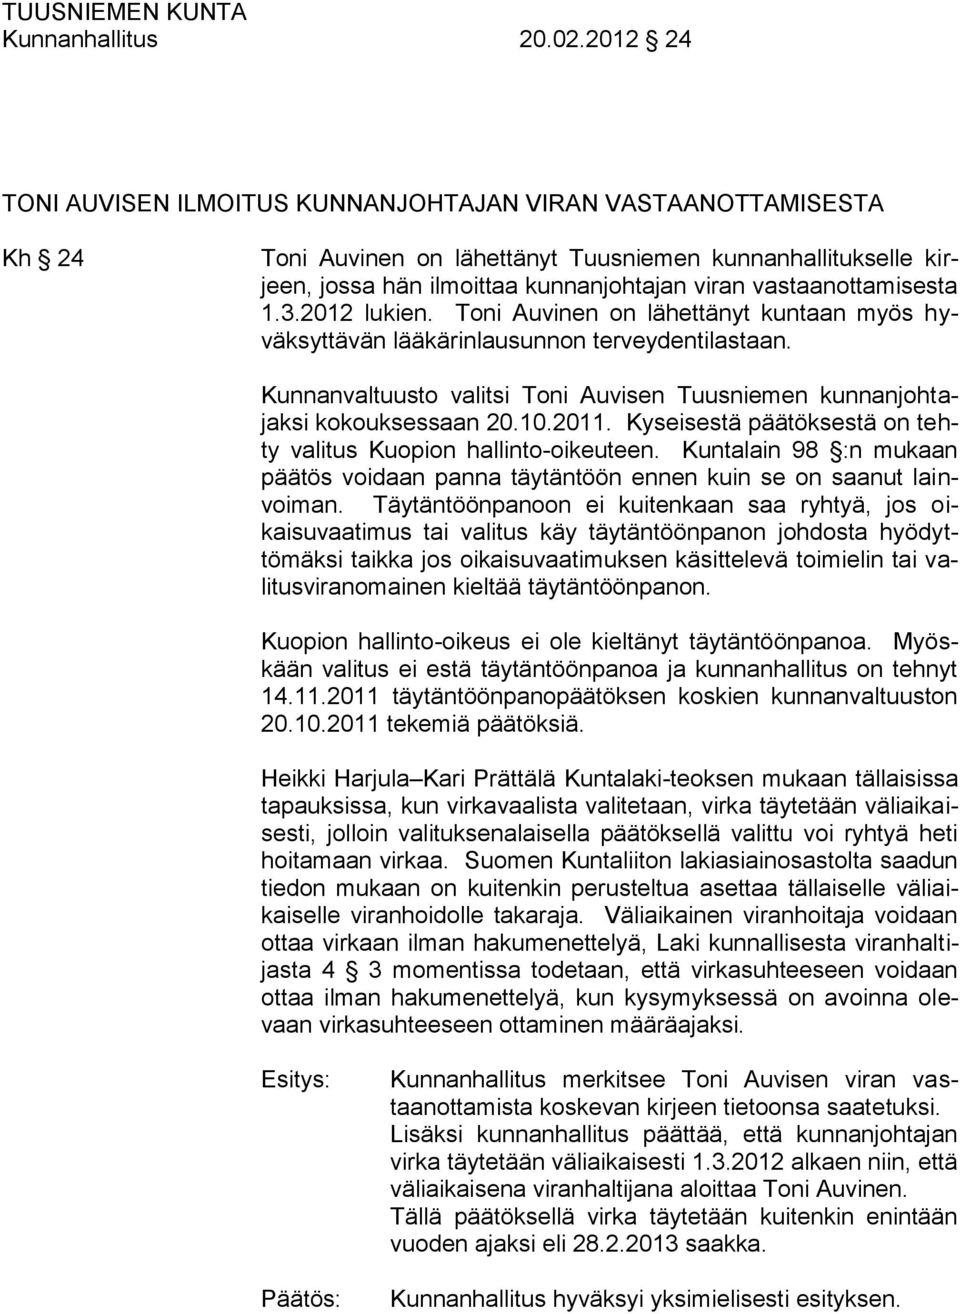 vastaanottamisesta 1.3.2012 lukien. Toni Auvinen on lähettänyt kuntaan myös hyväksyttävän lääkärinlausunnon terveydentilastaan.